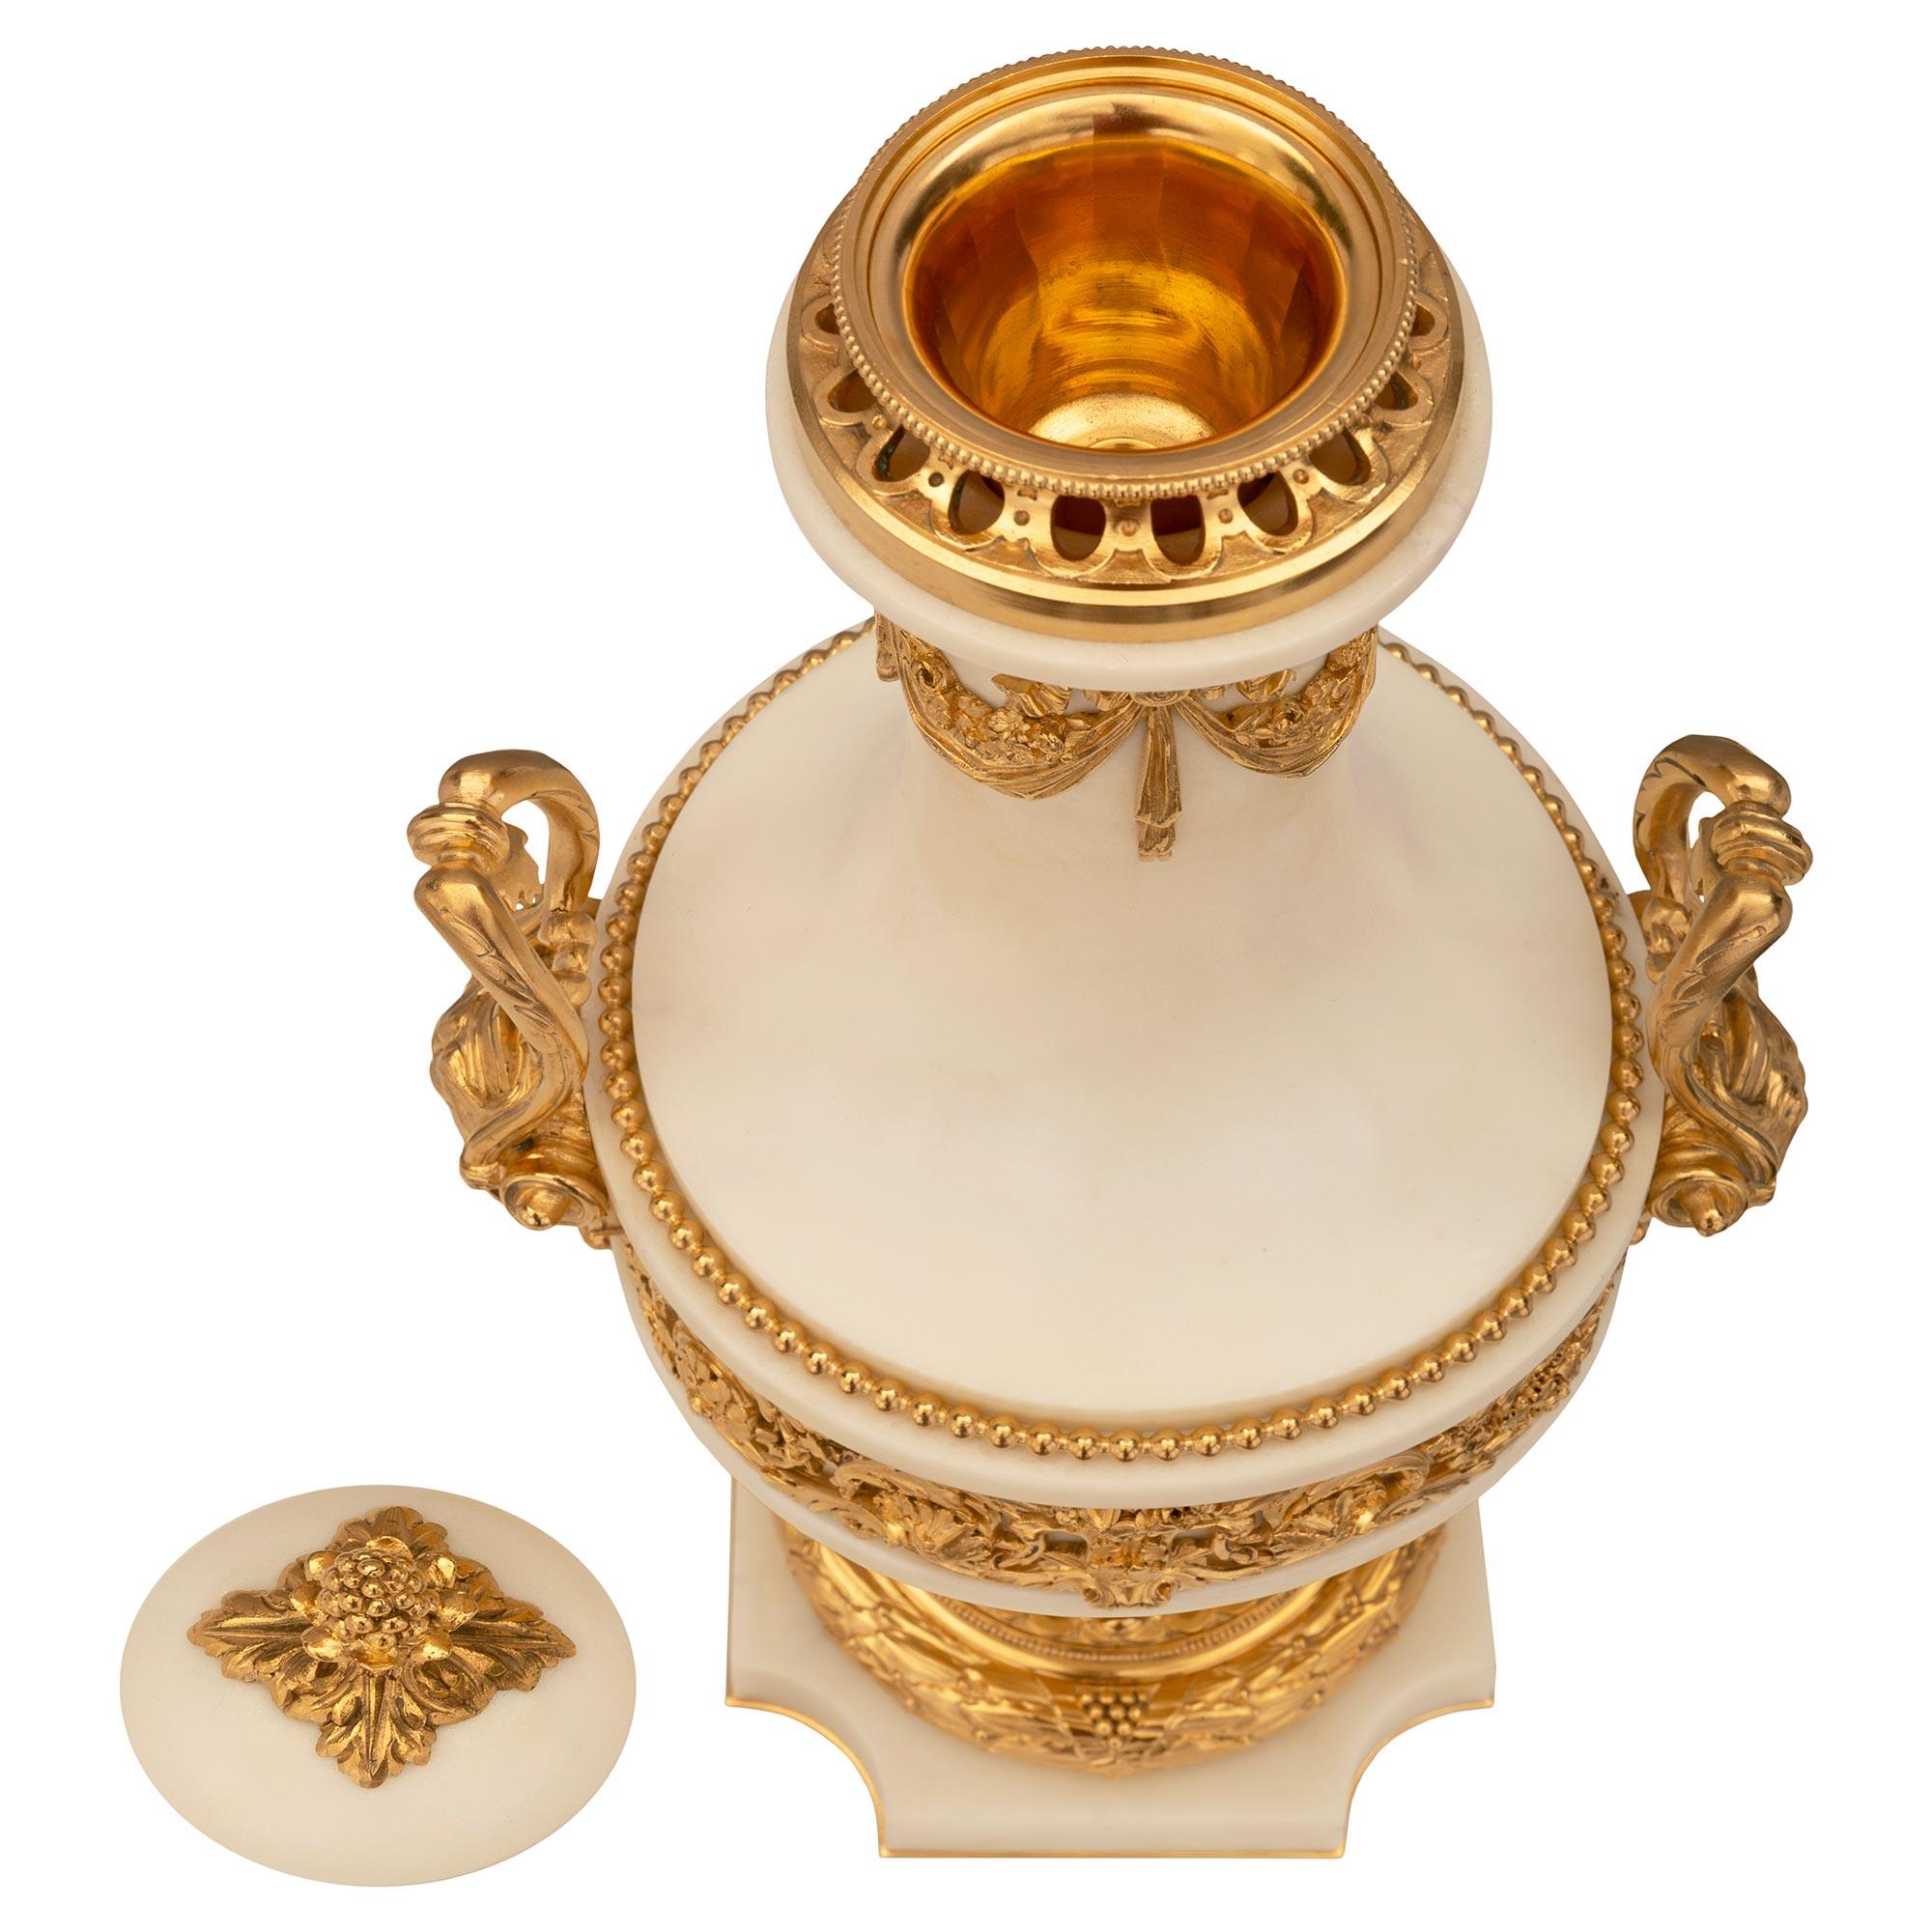 Paire exceptionnelle et de très haute qualité d'urnes à couvercle en marbre blanc de Carrare et bronze doré, de style Louis XVI et d'époque Belle Époque. Chaque urne est surélevée par une base carrée aux angles concaves et un fin filet de fond en